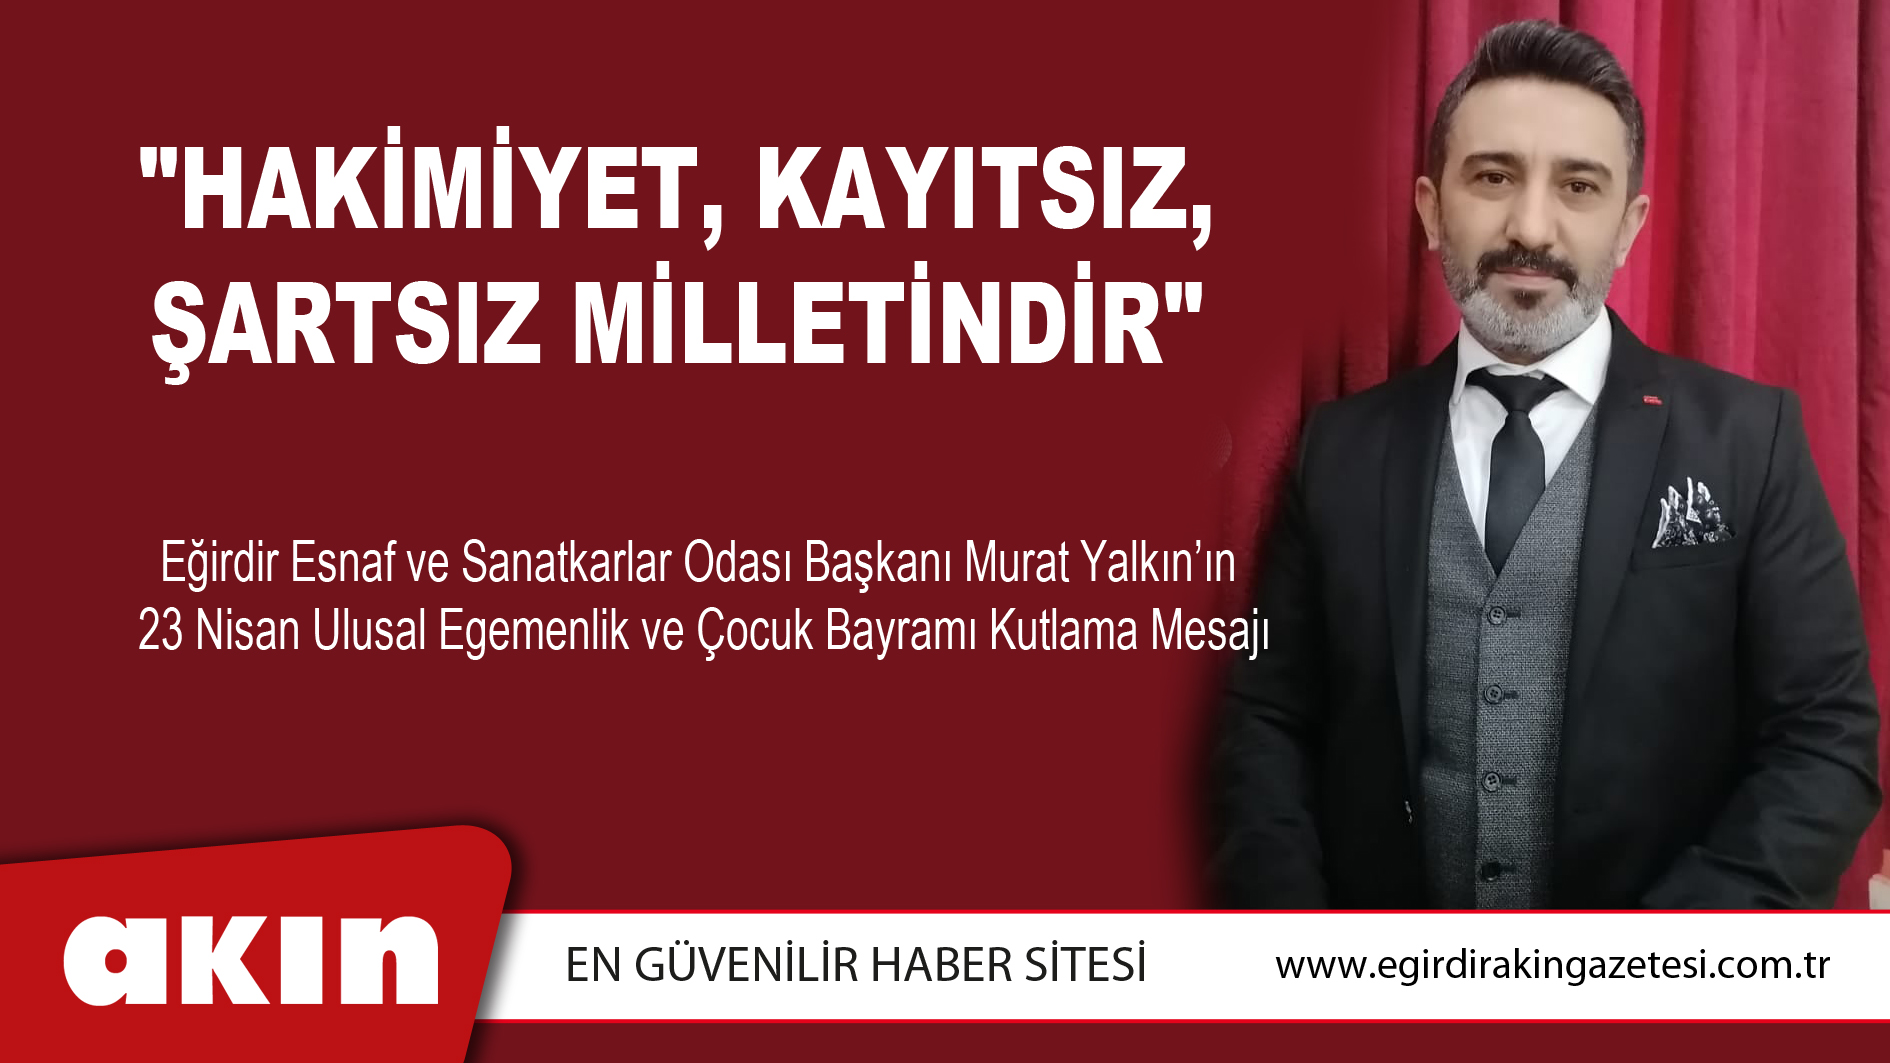 Eğirdir Esnaf Odası Başkanı Murat Yalkın'dan kutlama